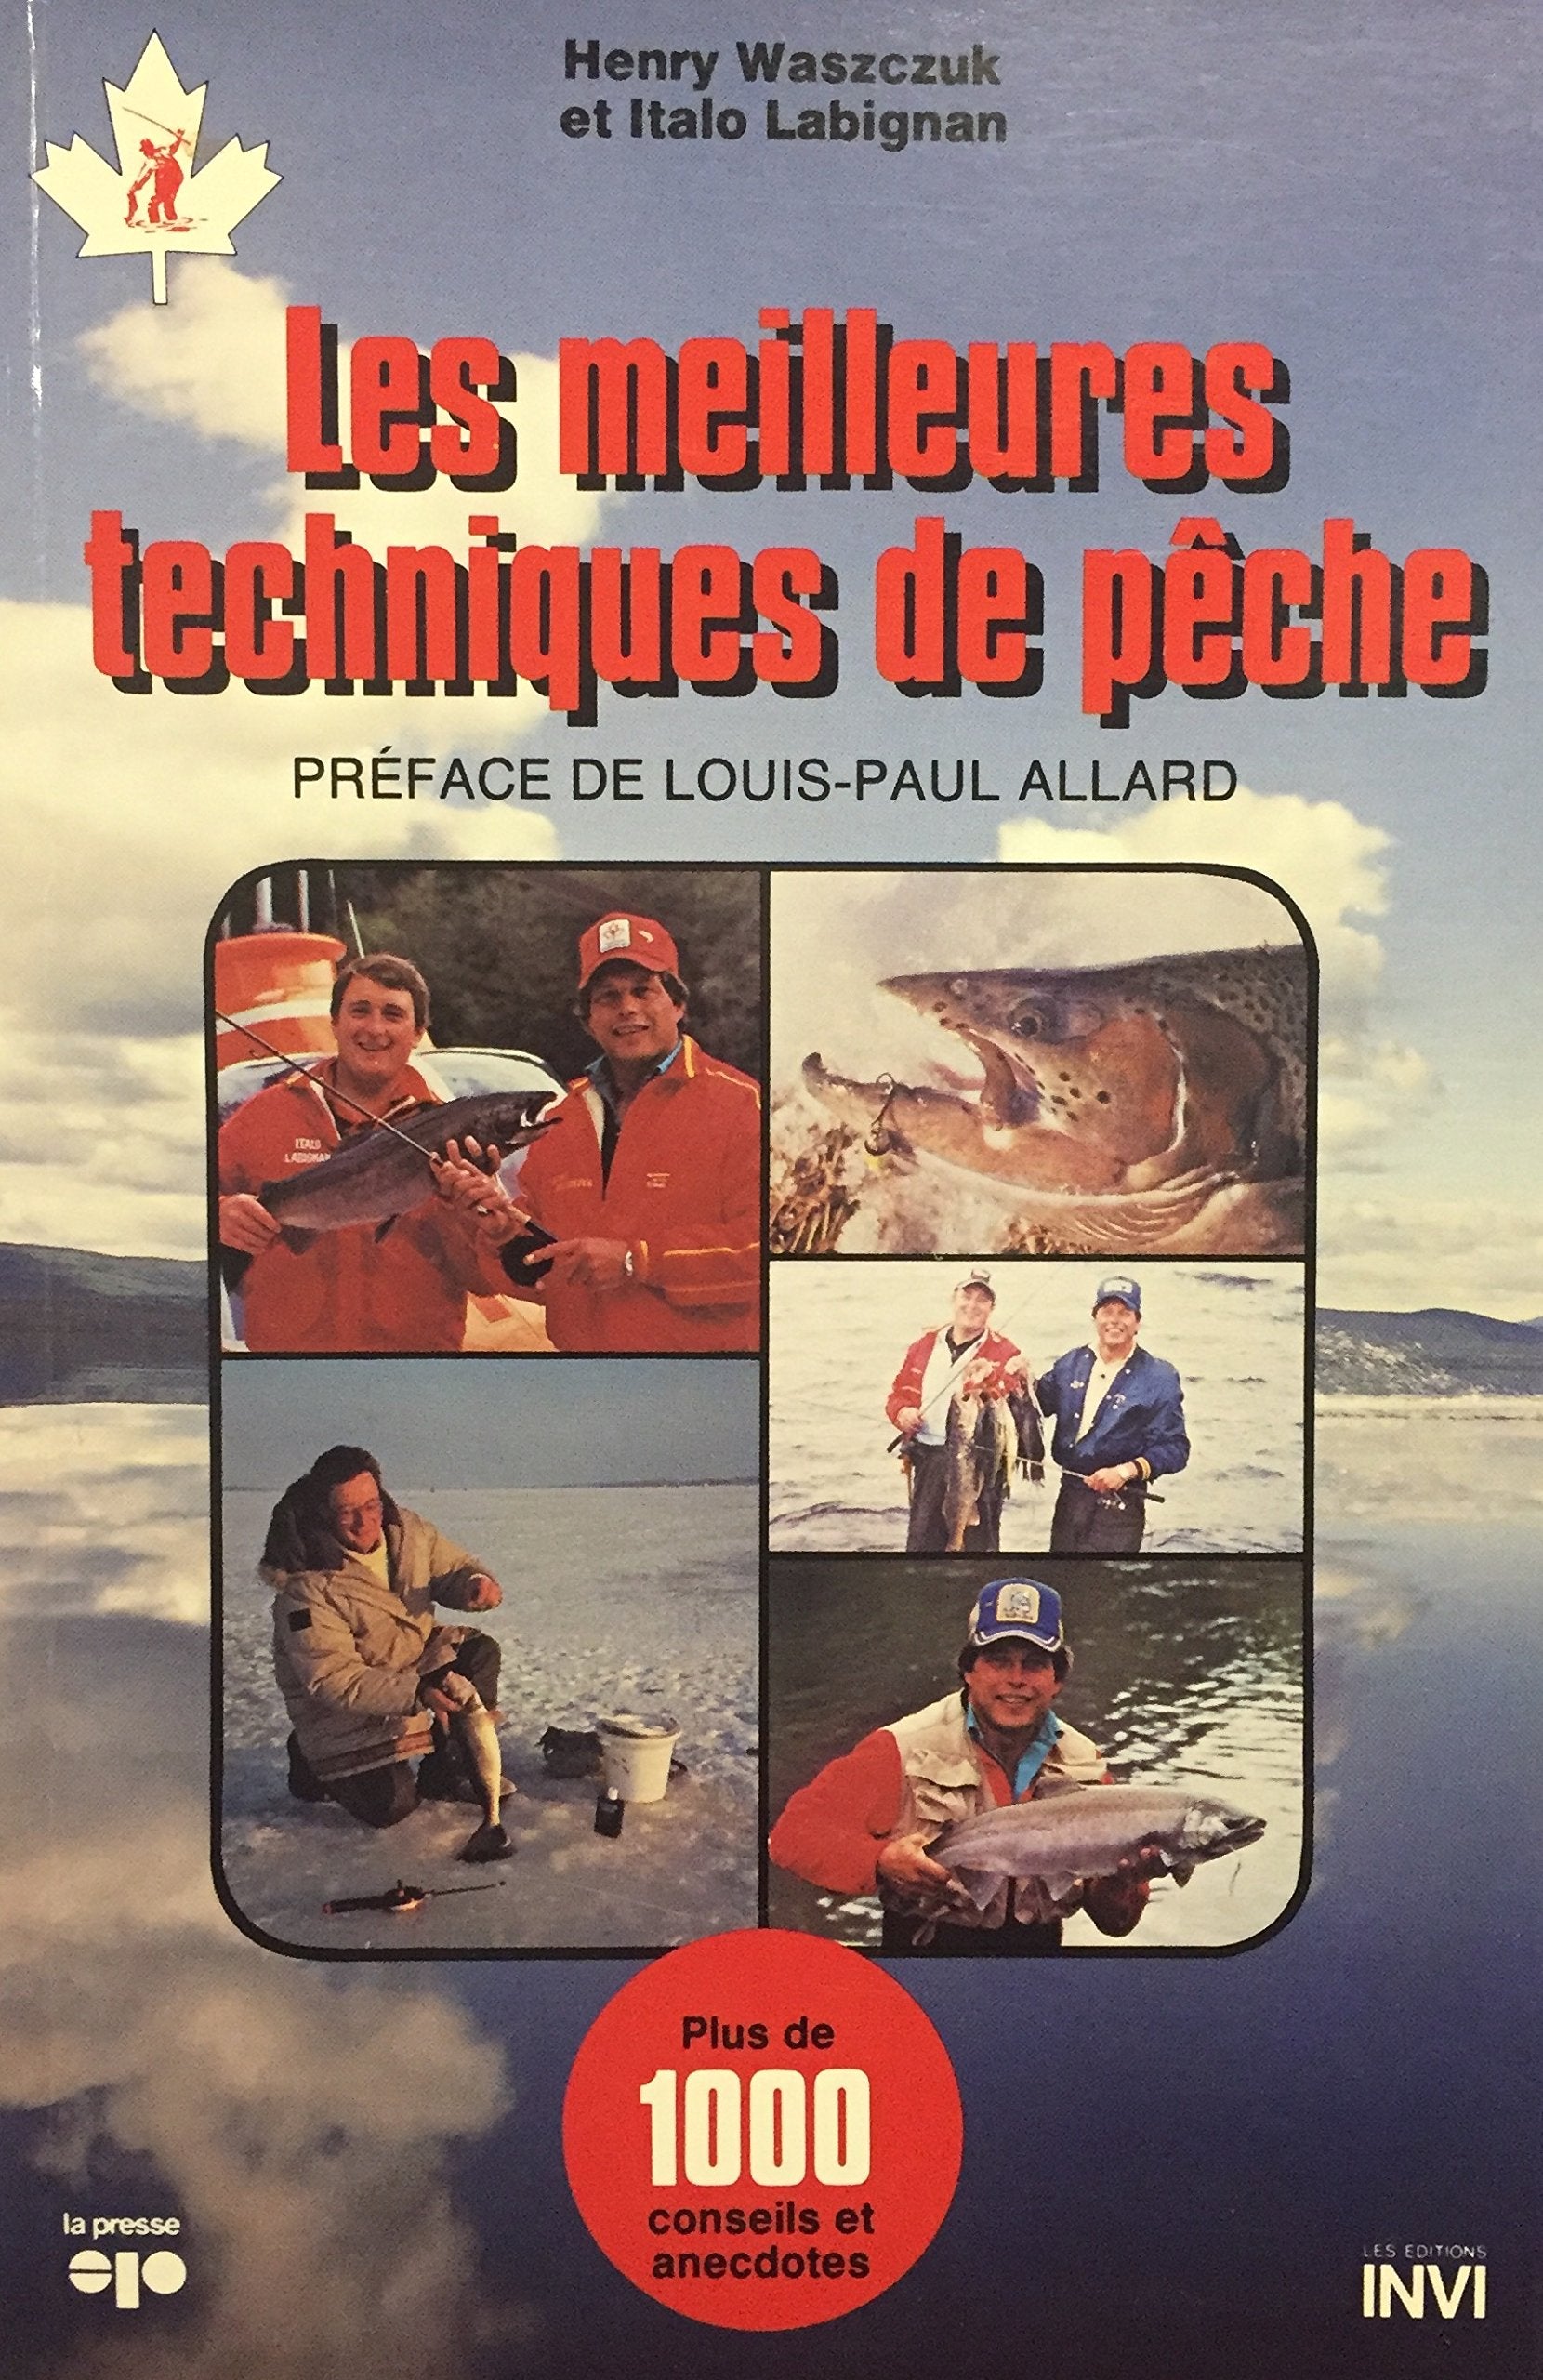 Livre ISBN 2890432157 Les meilleures techniques de pêche (Henry Waszczuk)